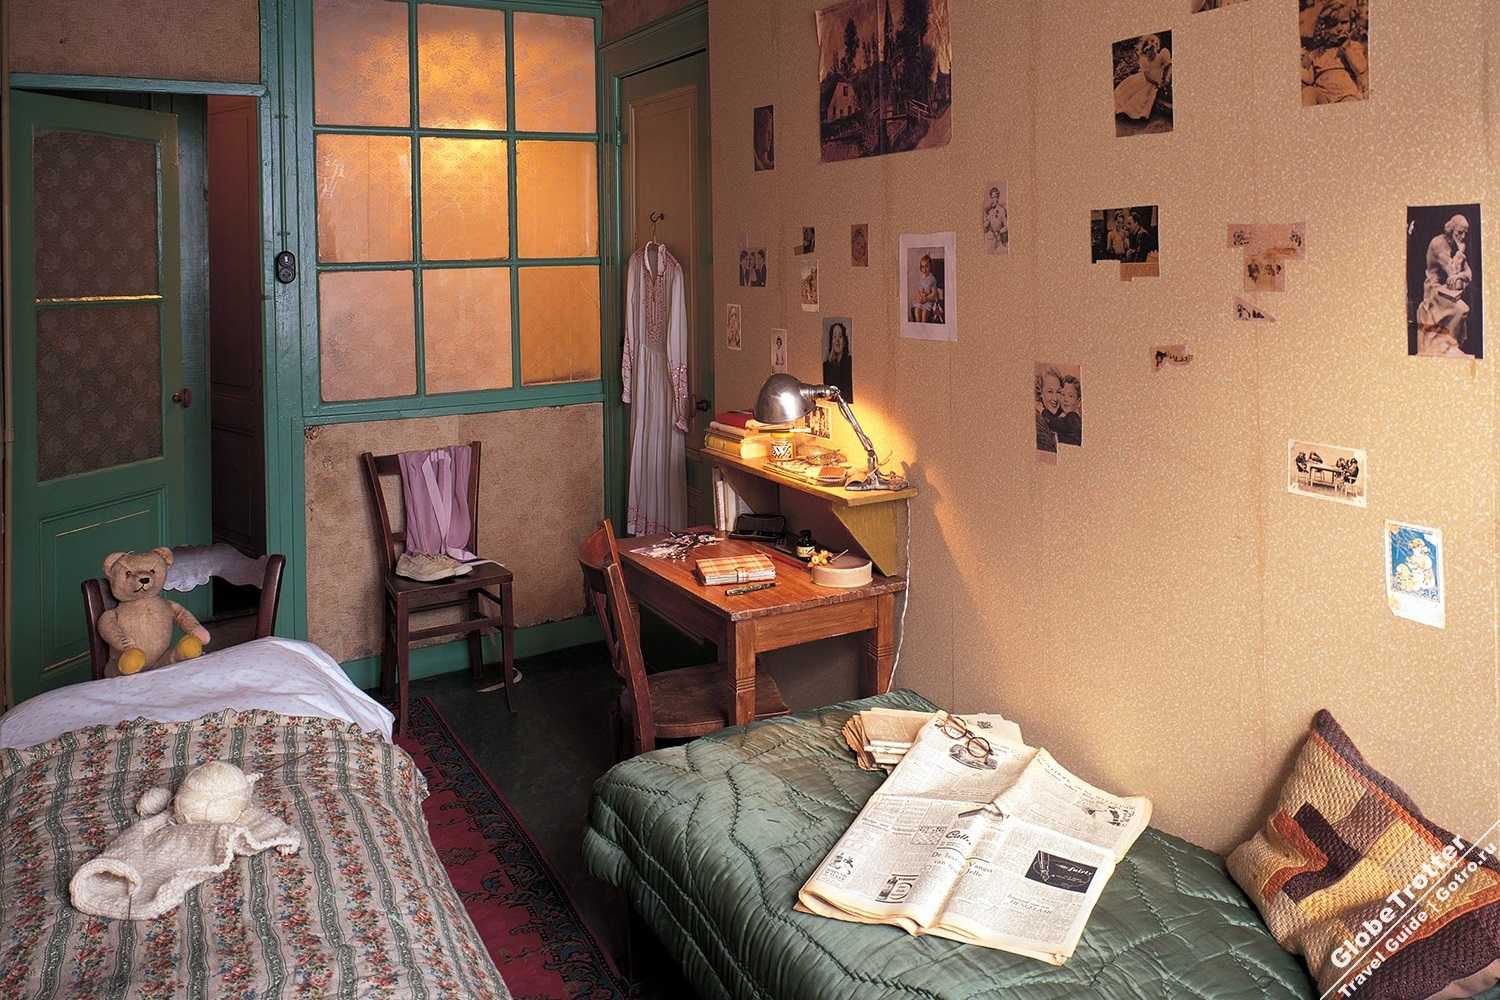 Подробное описание комнаты, где скрывалась с 1942 по 1944 года Анна Франк со своей семье и писал свой знаменитый дневник